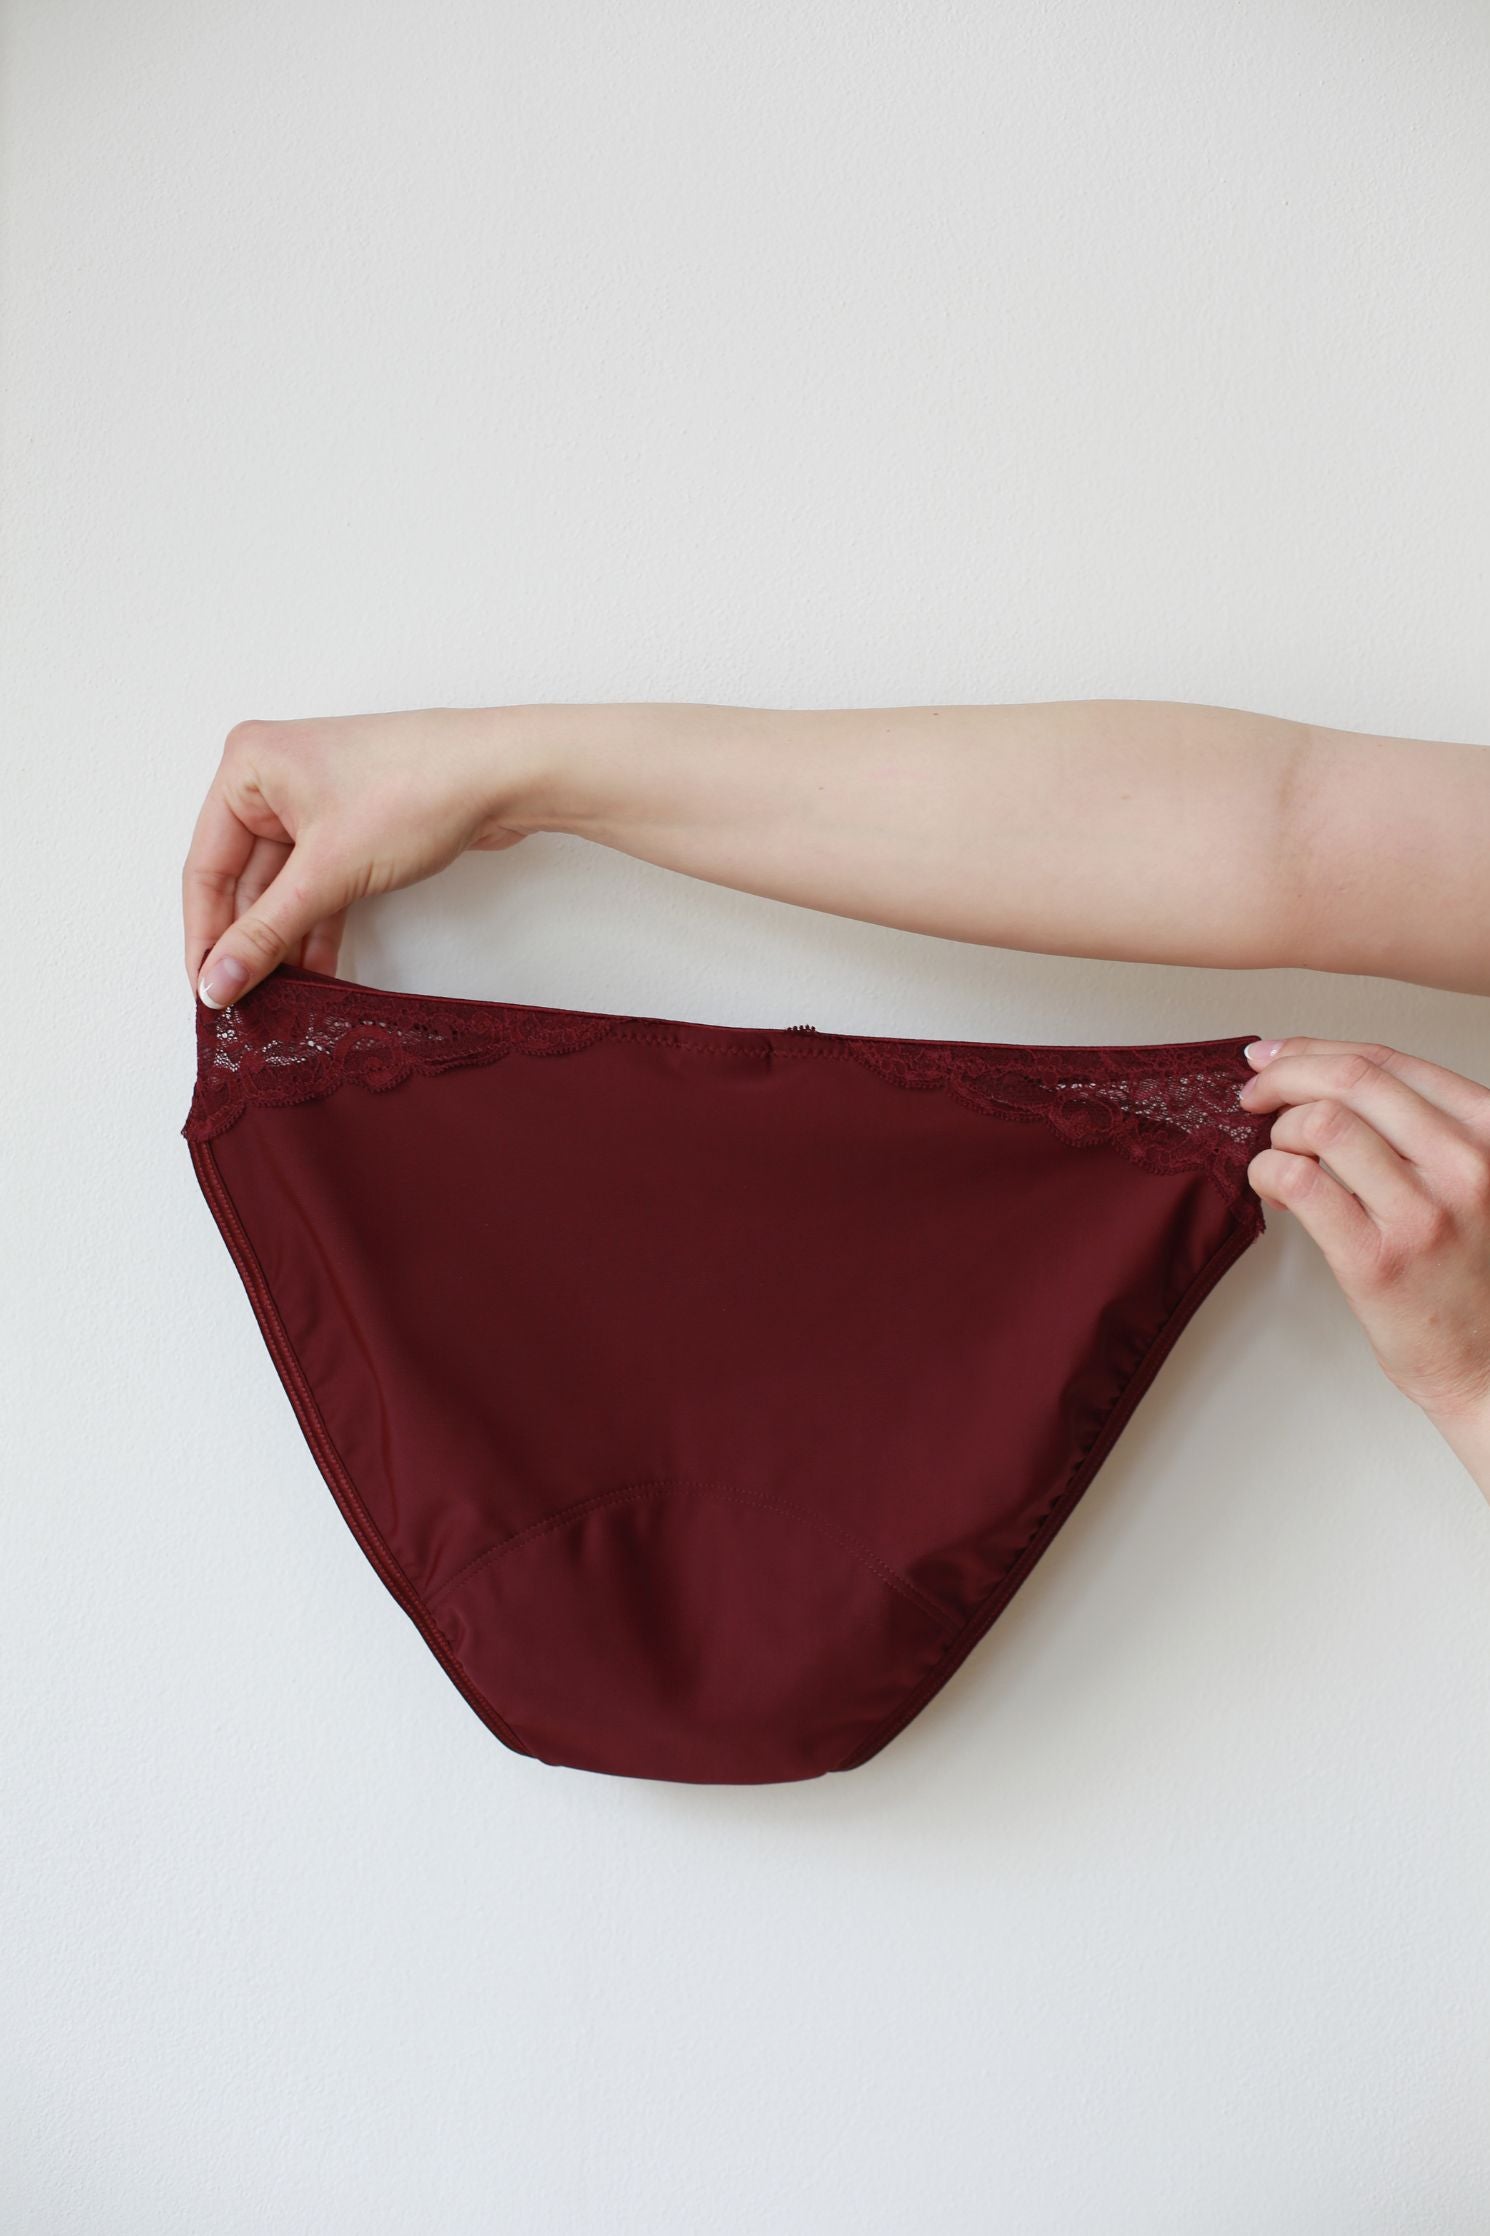 Produktová fotka zadní strany menstruačních kalhotek.